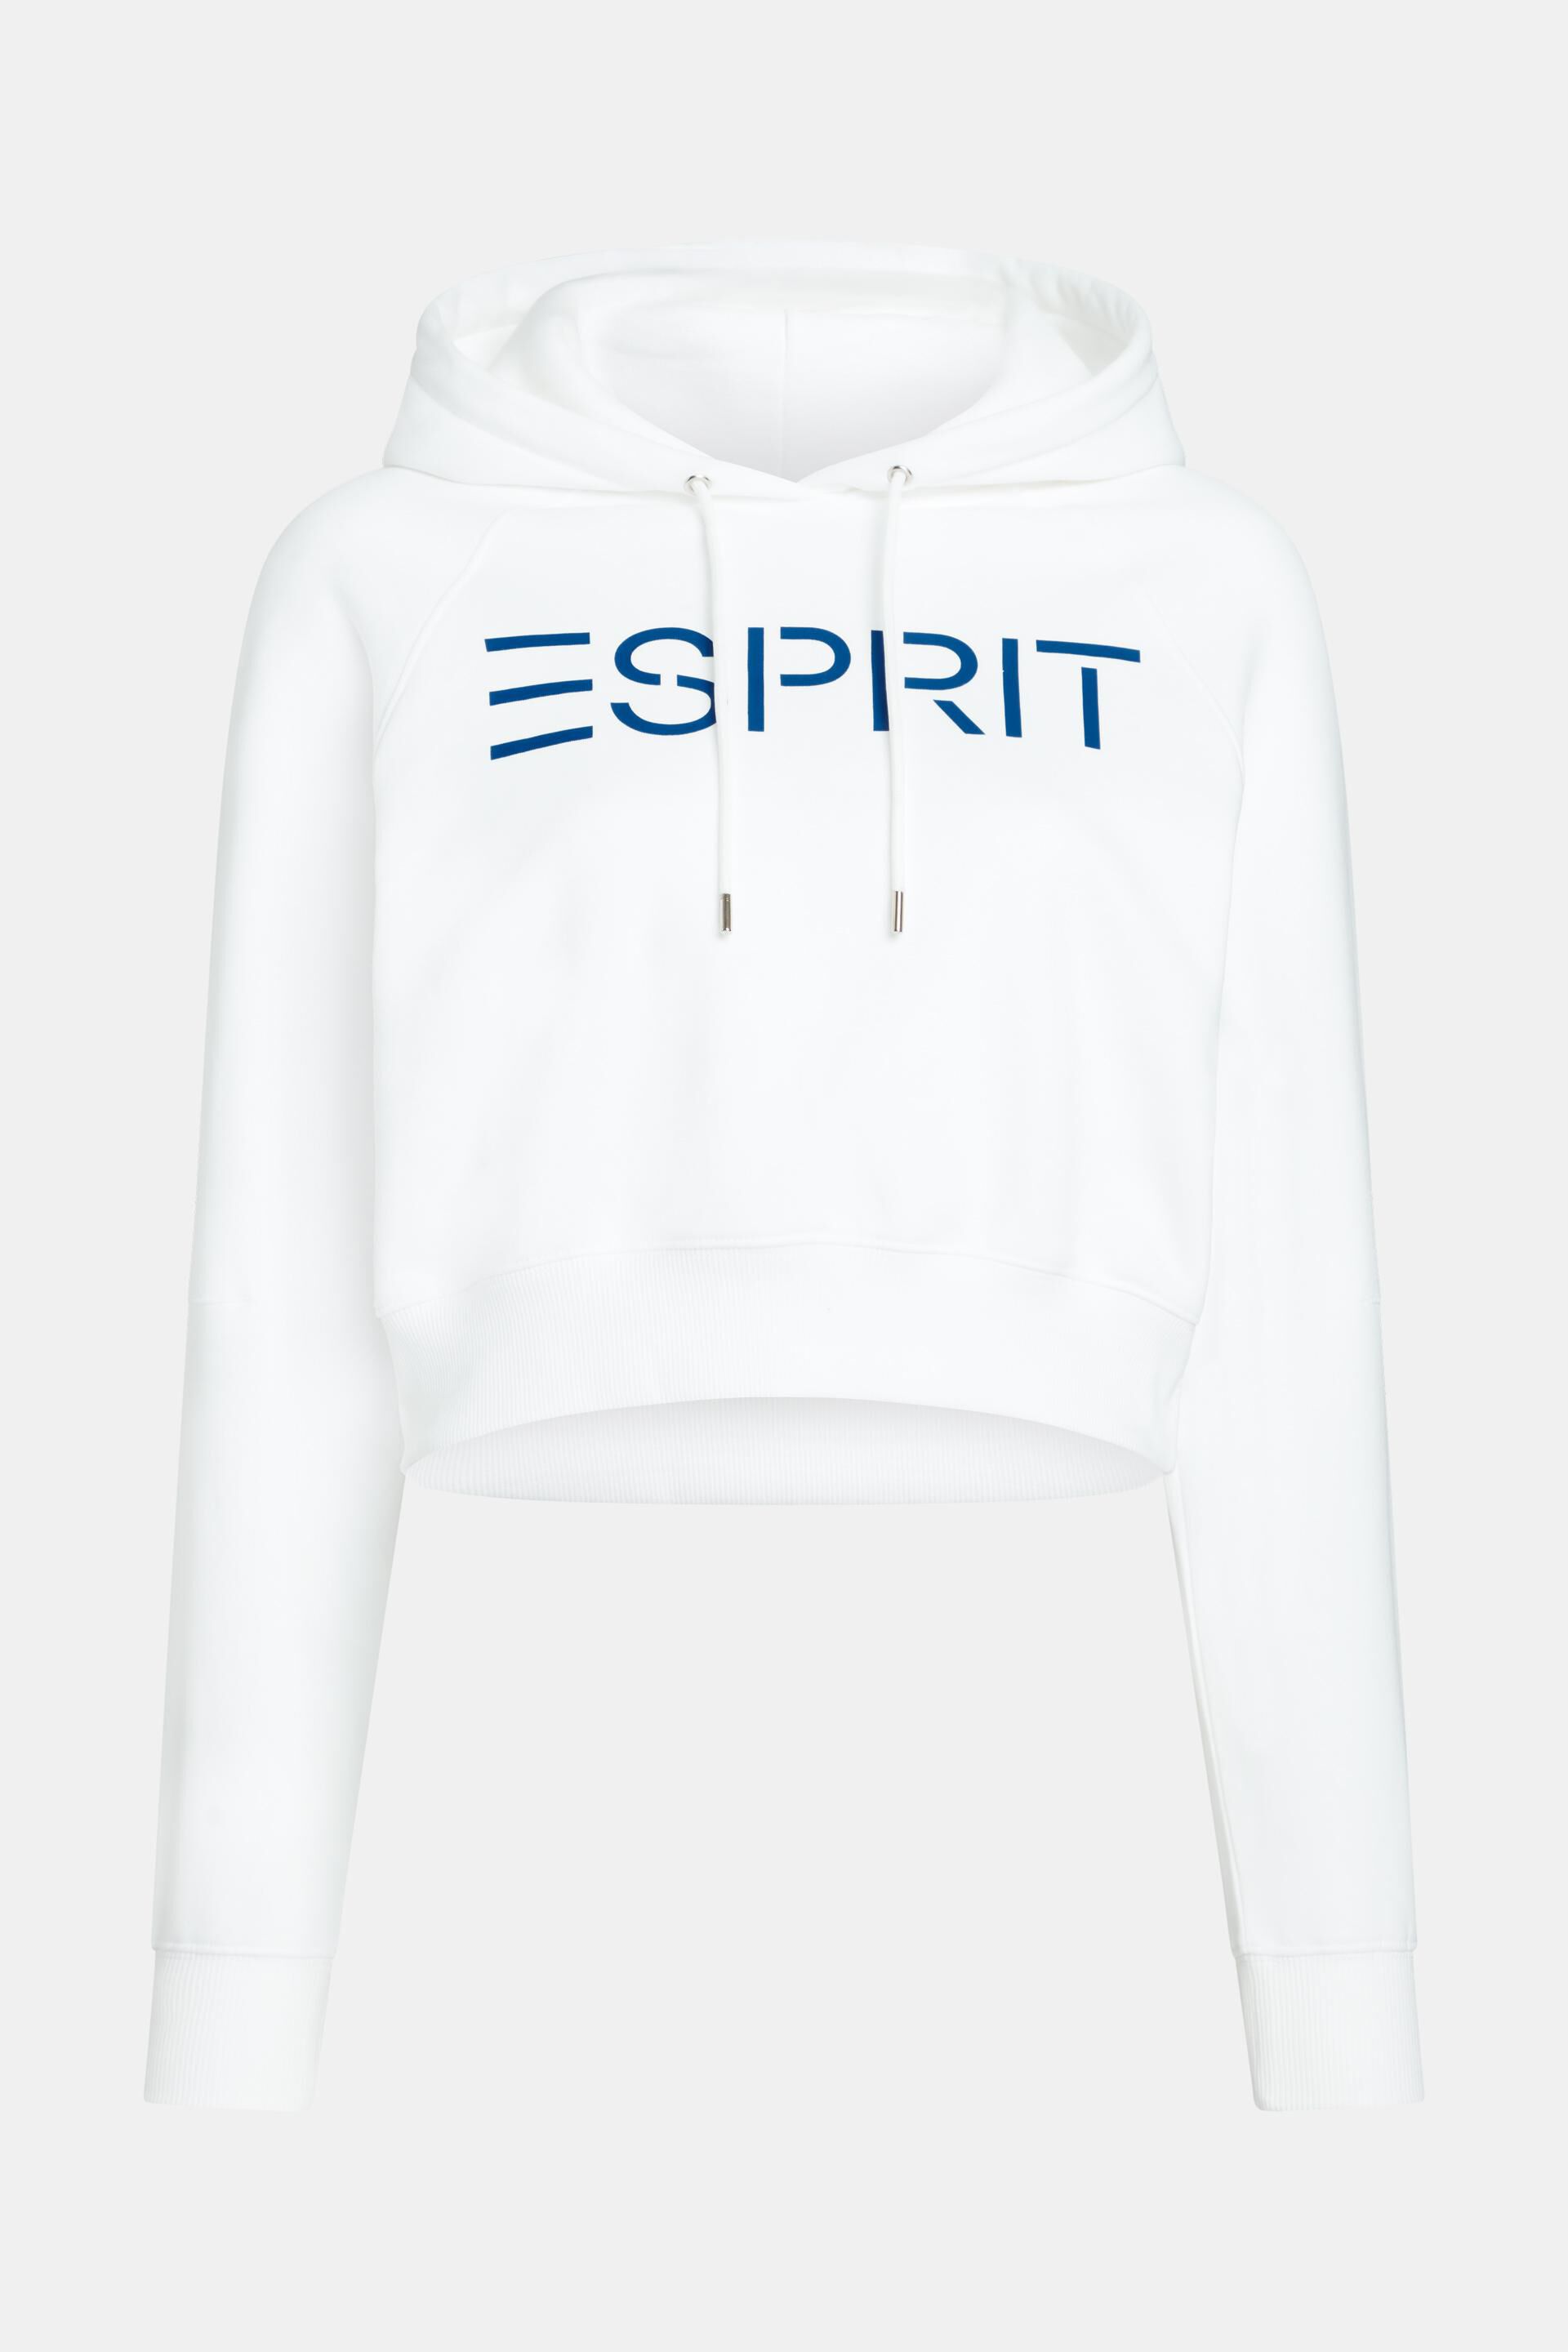 Esprit Logo Kurzer Kapuzenpullover mit